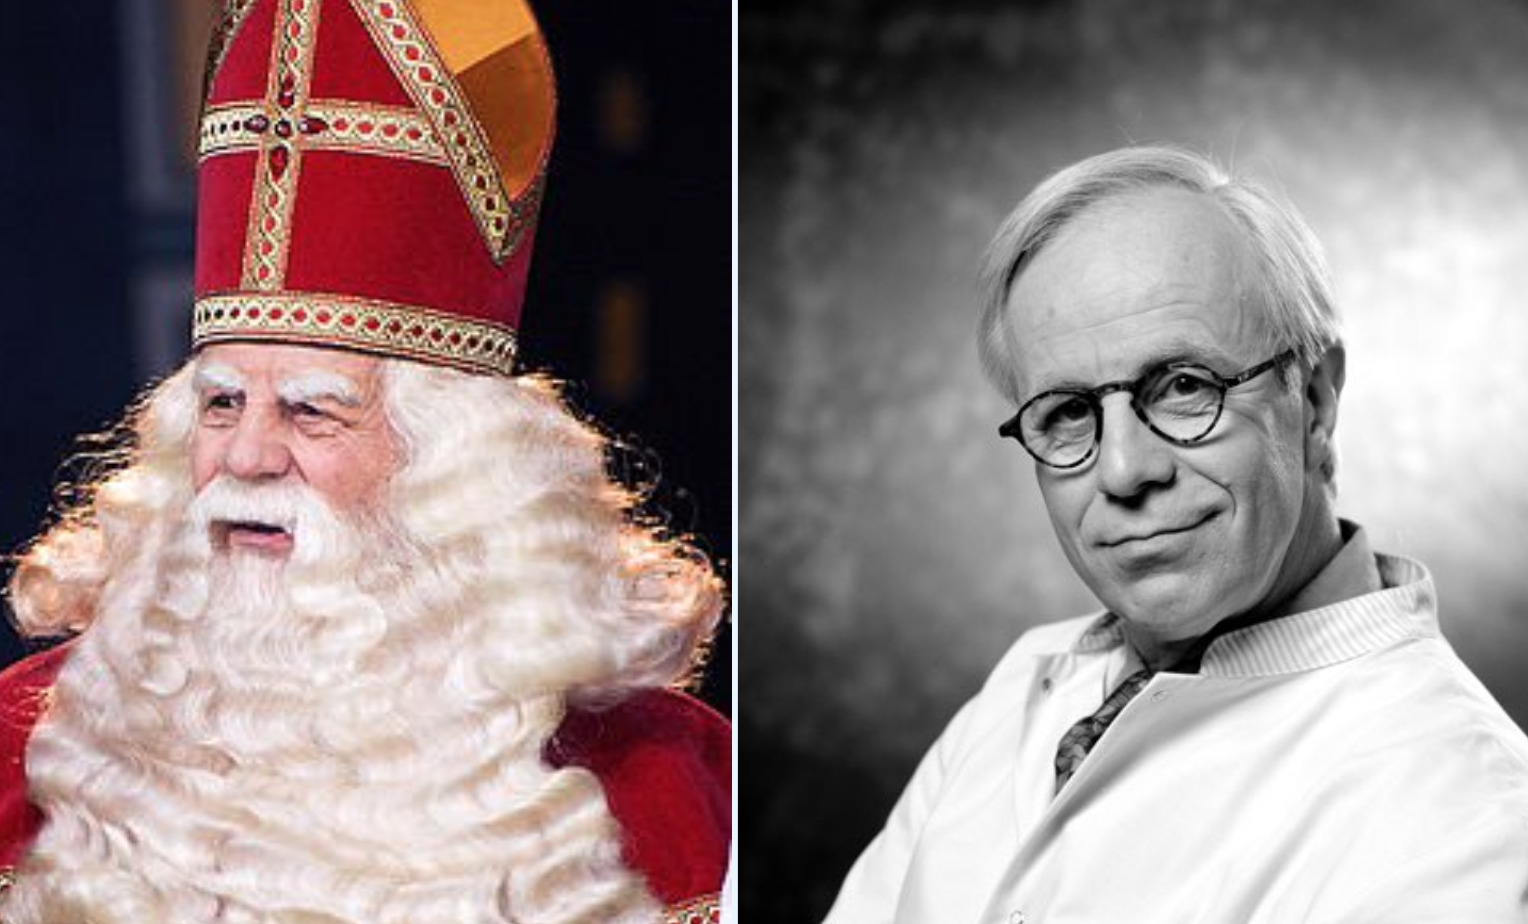 van der (86), de man achter de baard van Sinterklaas, is niet meer - Jonet.nl